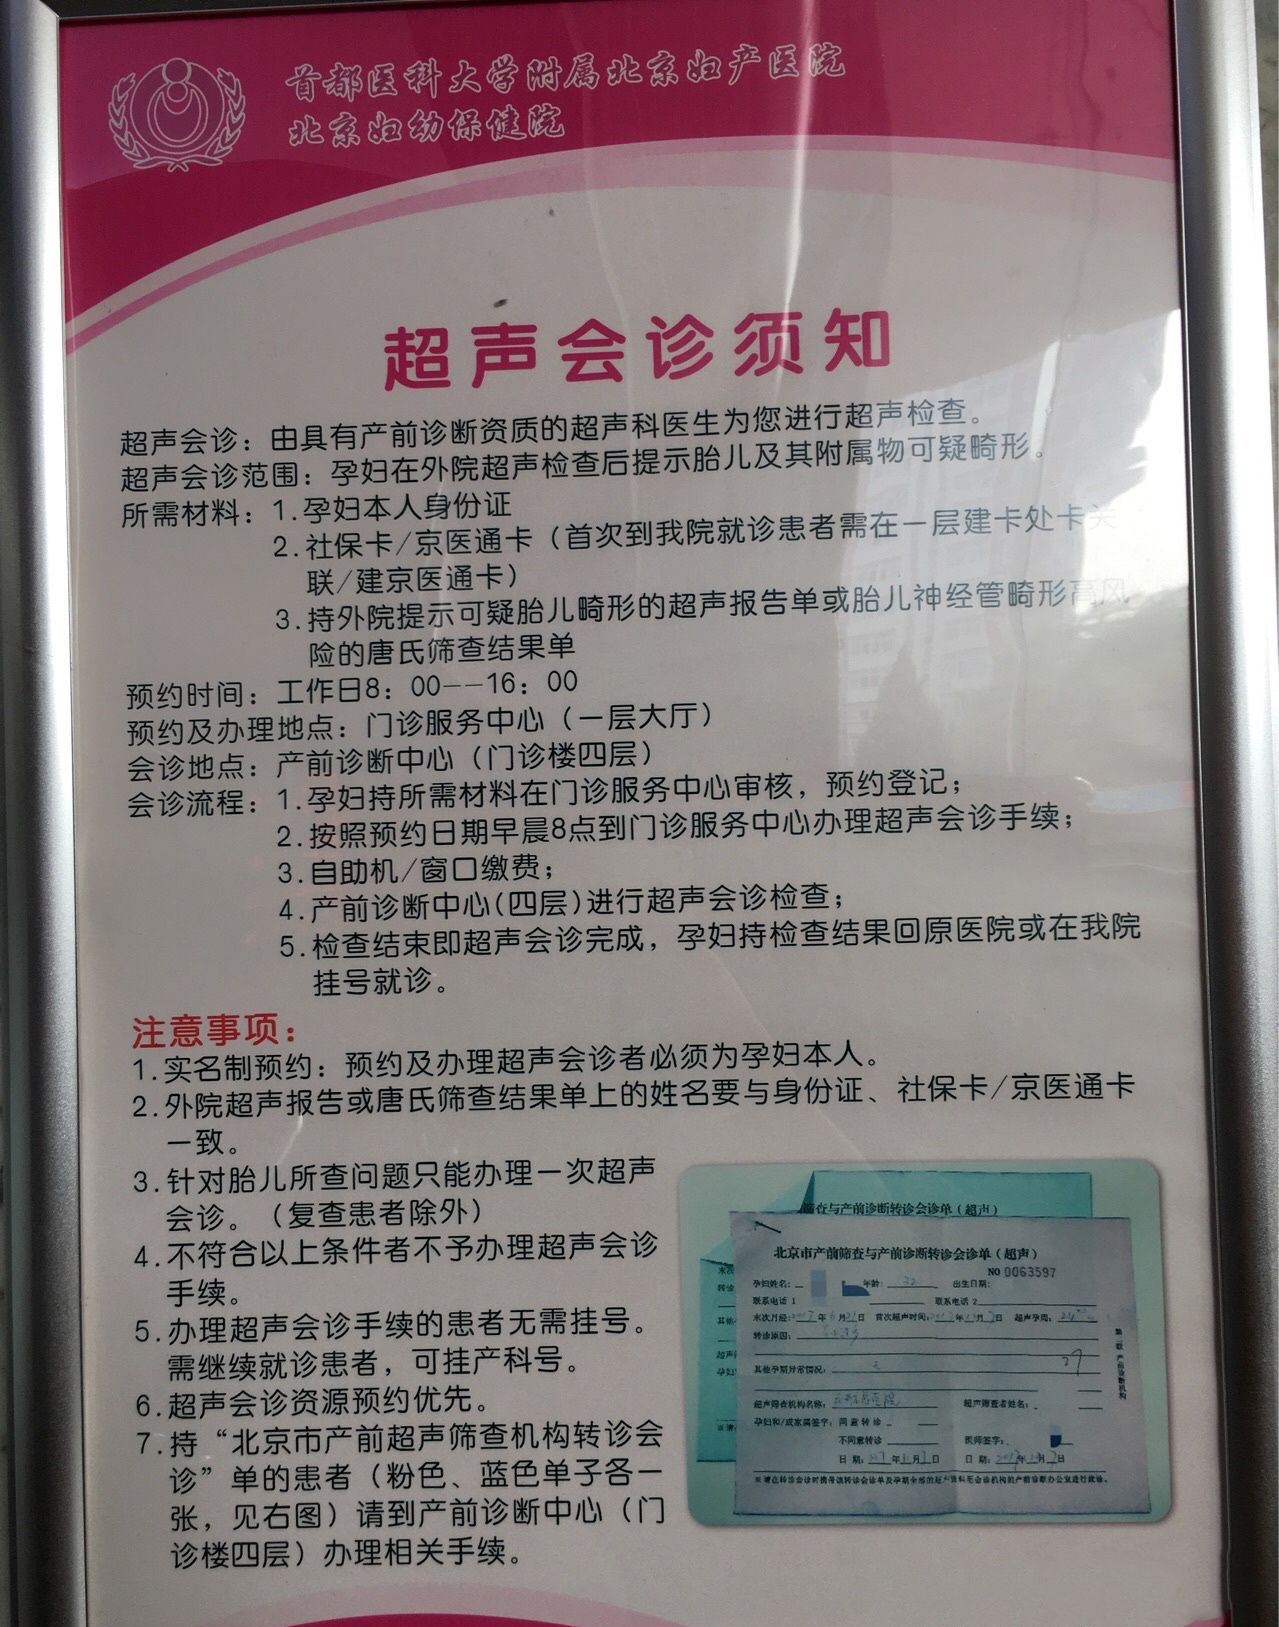 包含北京妇产医院找黄牛挂号可以帮忙建档吗；优化疫情防控新举措能够缓解各地疫情处置当中遇到的瓶颈和障碍问题的词条